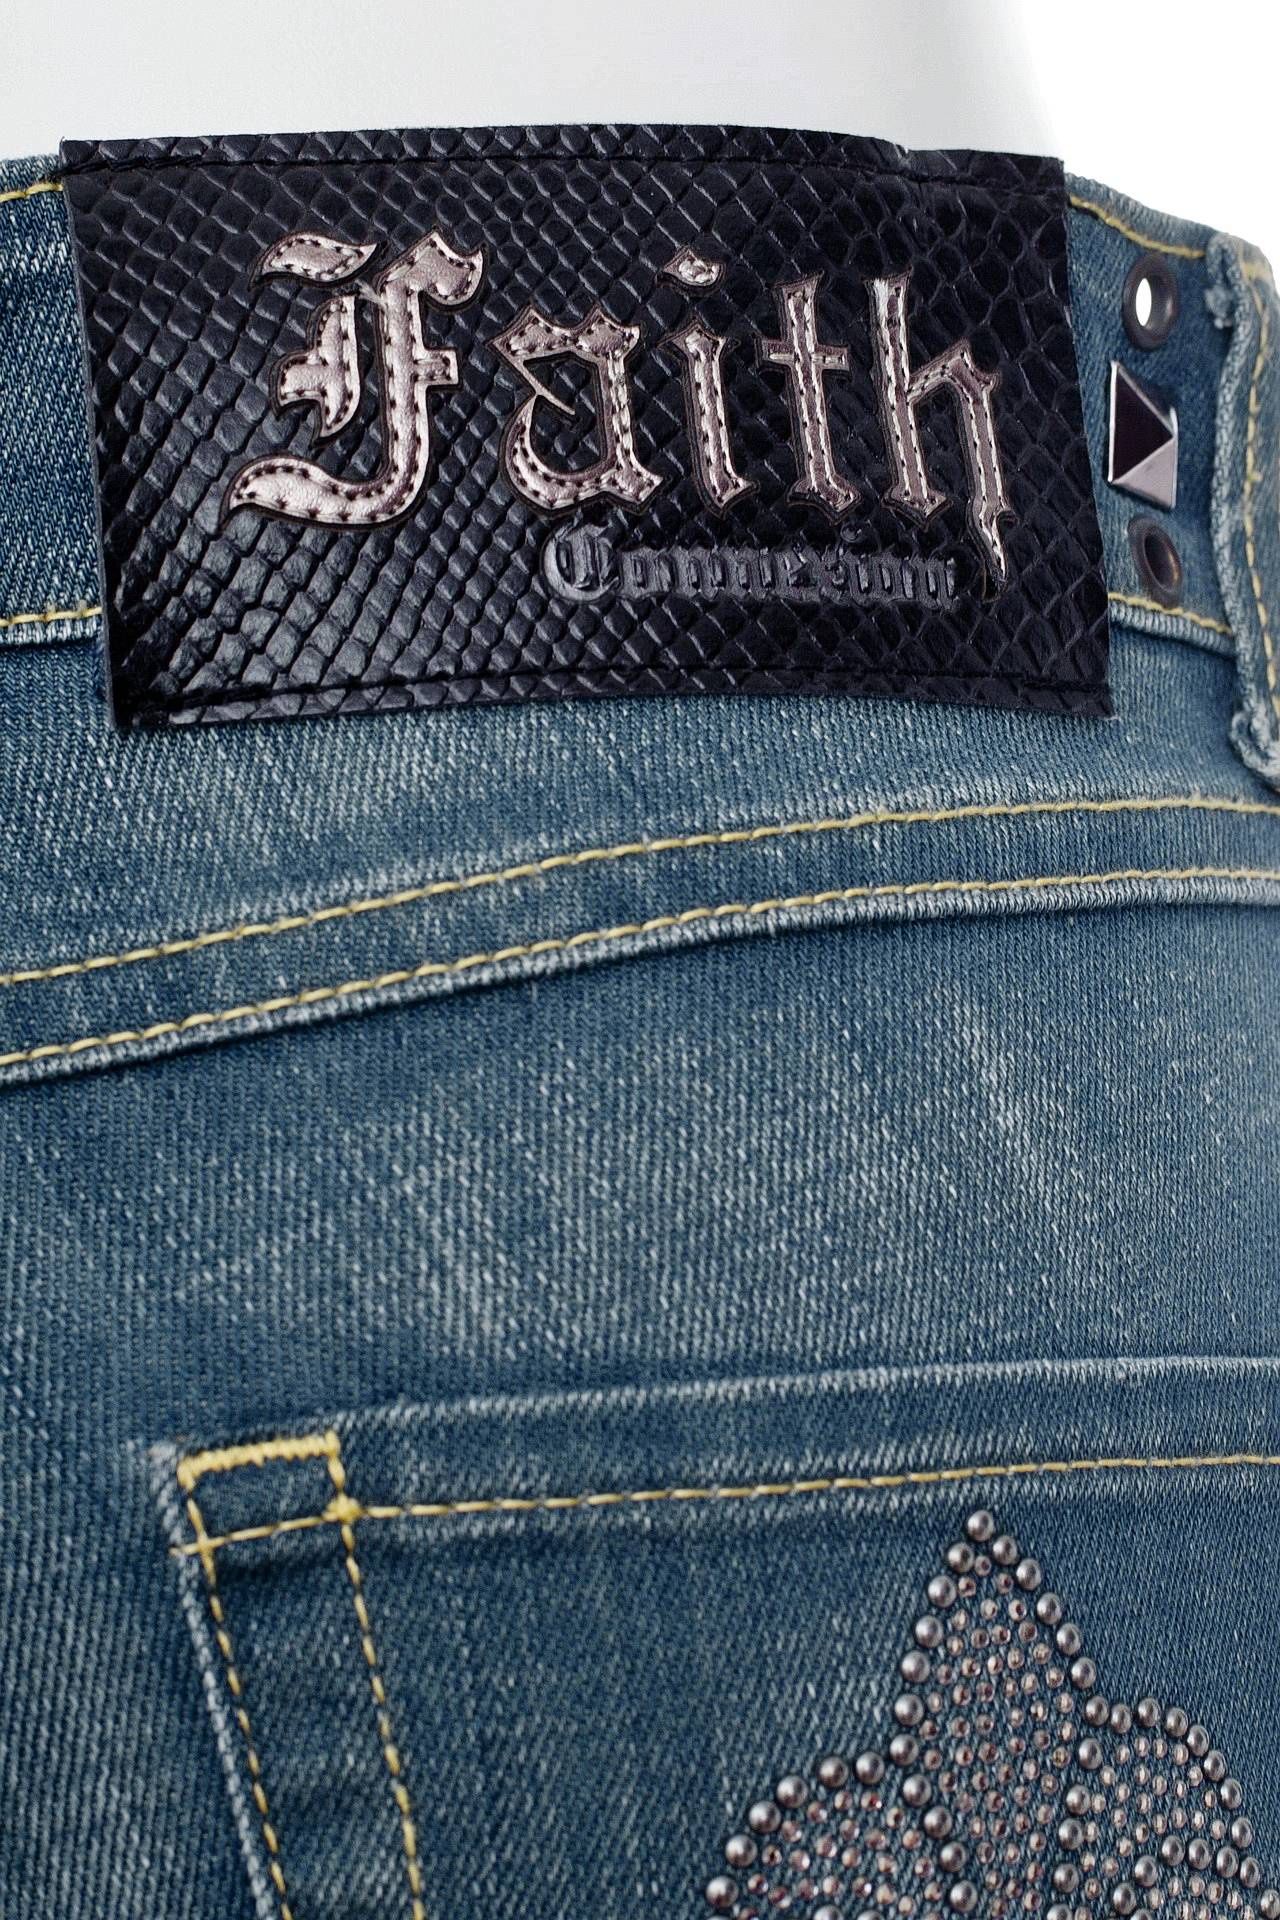  FAITH CONNEXION,  42 